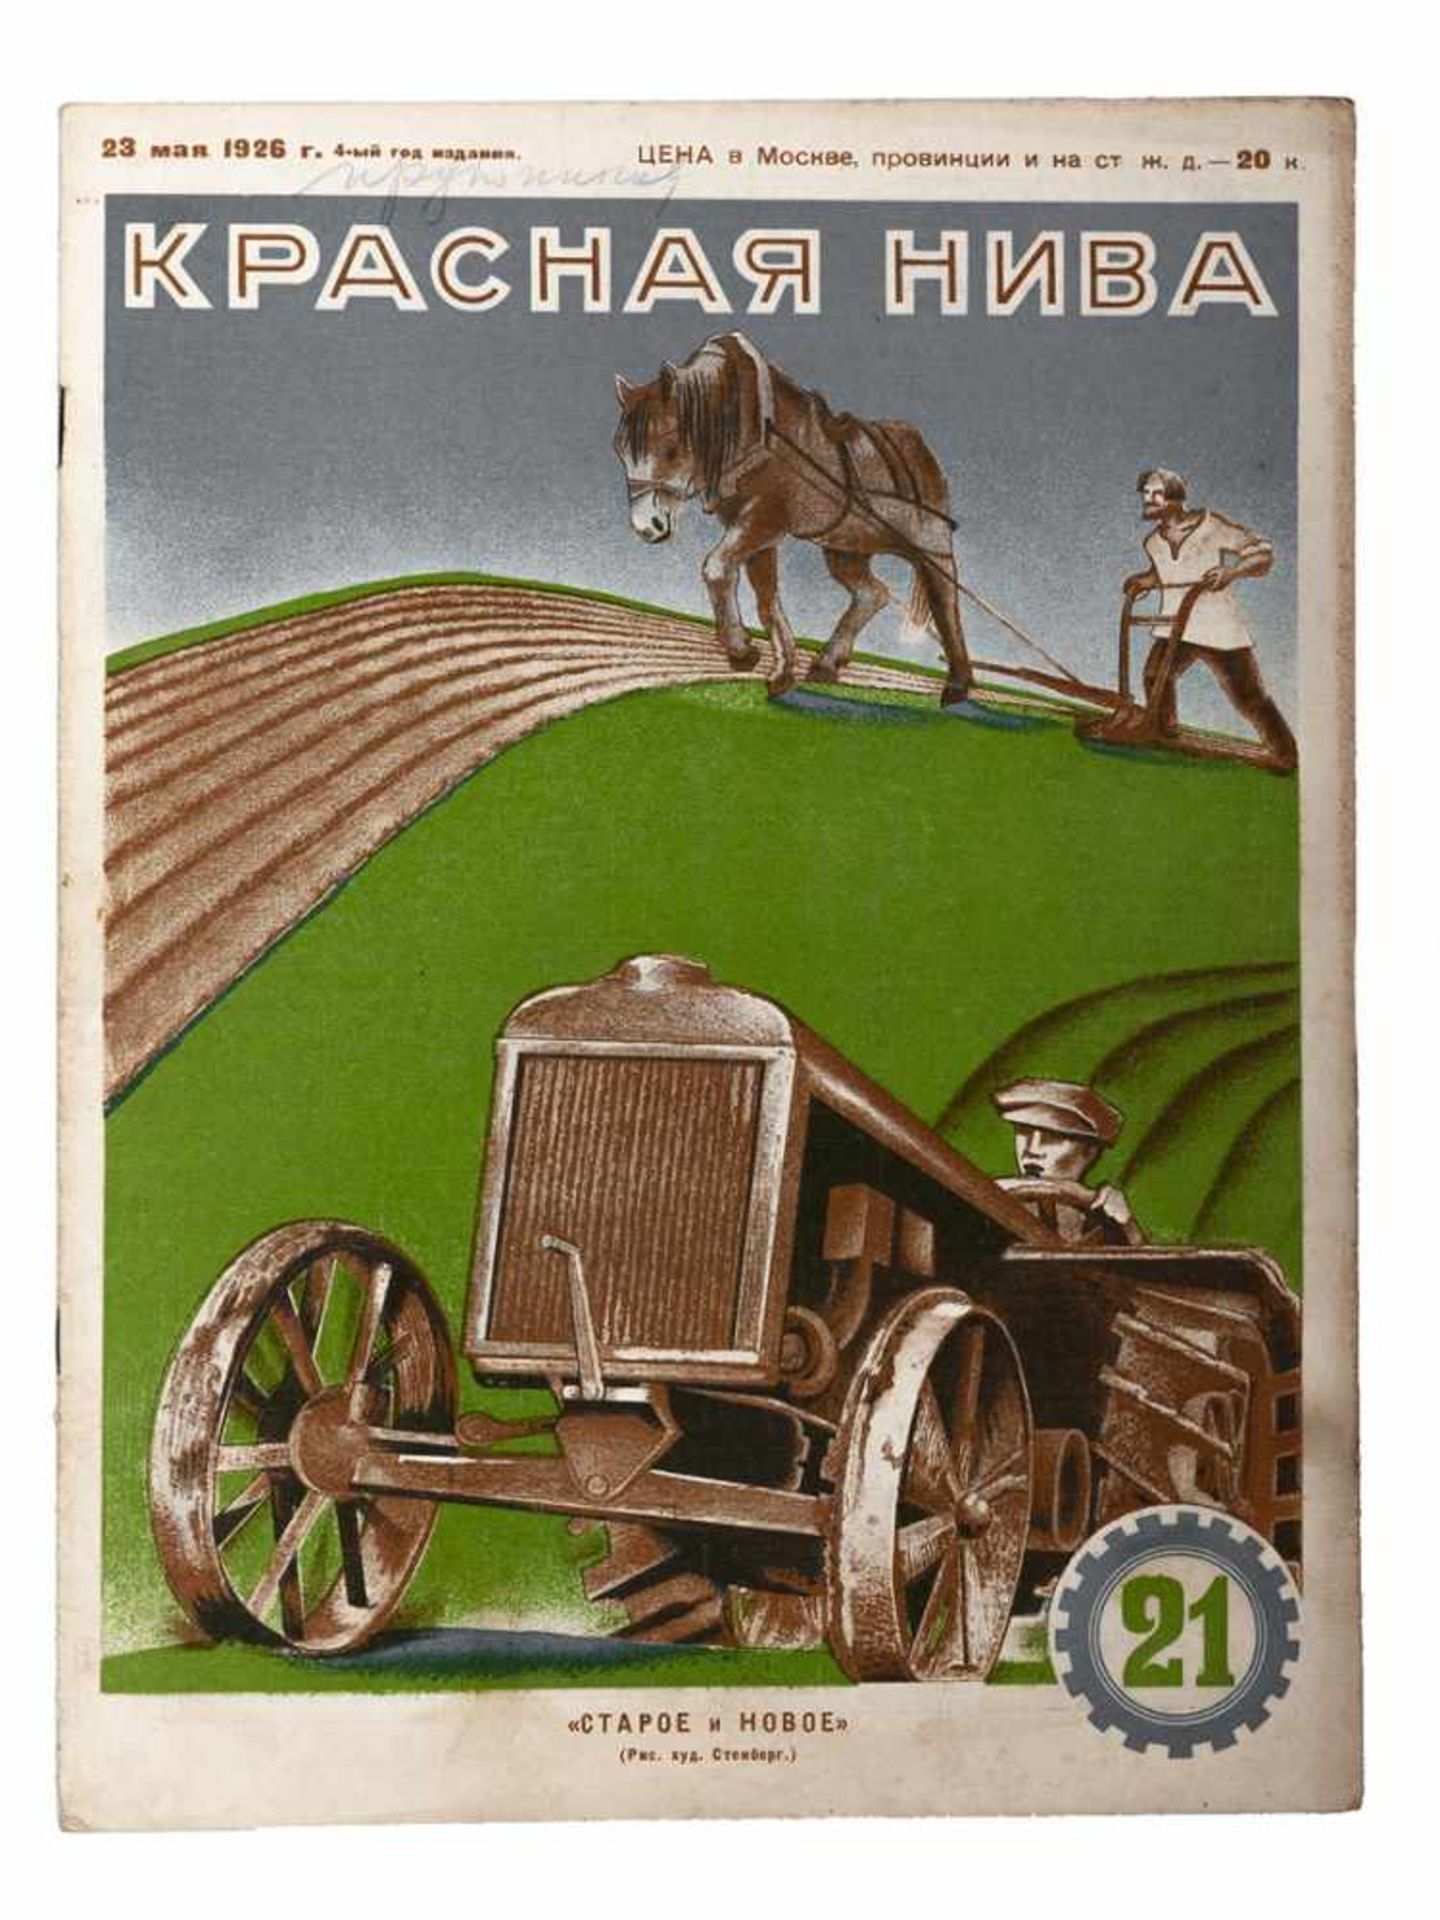 [Soviet art]. Krasnaya Niva: [Magazine]. Issues 31. Moscow, 1926.